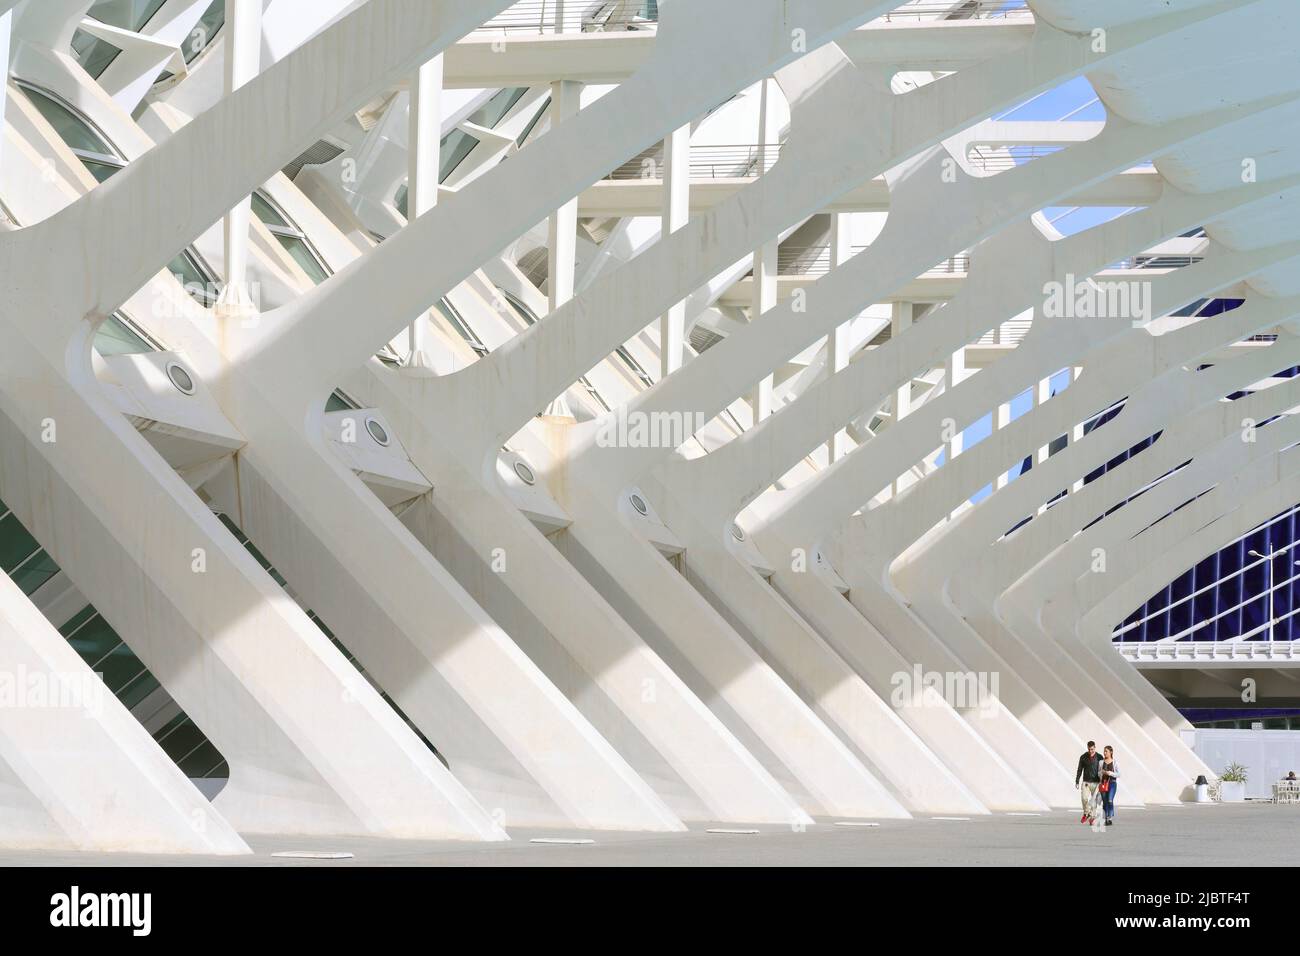 Spanien, Valencia, Stadt der Künste und Wissenschaften (Ciudad de las Artes y las Ciencias), Kulturkomplex nach Plänen des Architekten Santiago Calatrava, Blick auf das Príncipe-Museum (Naturwissenschaftliches Museum) Stockfoto